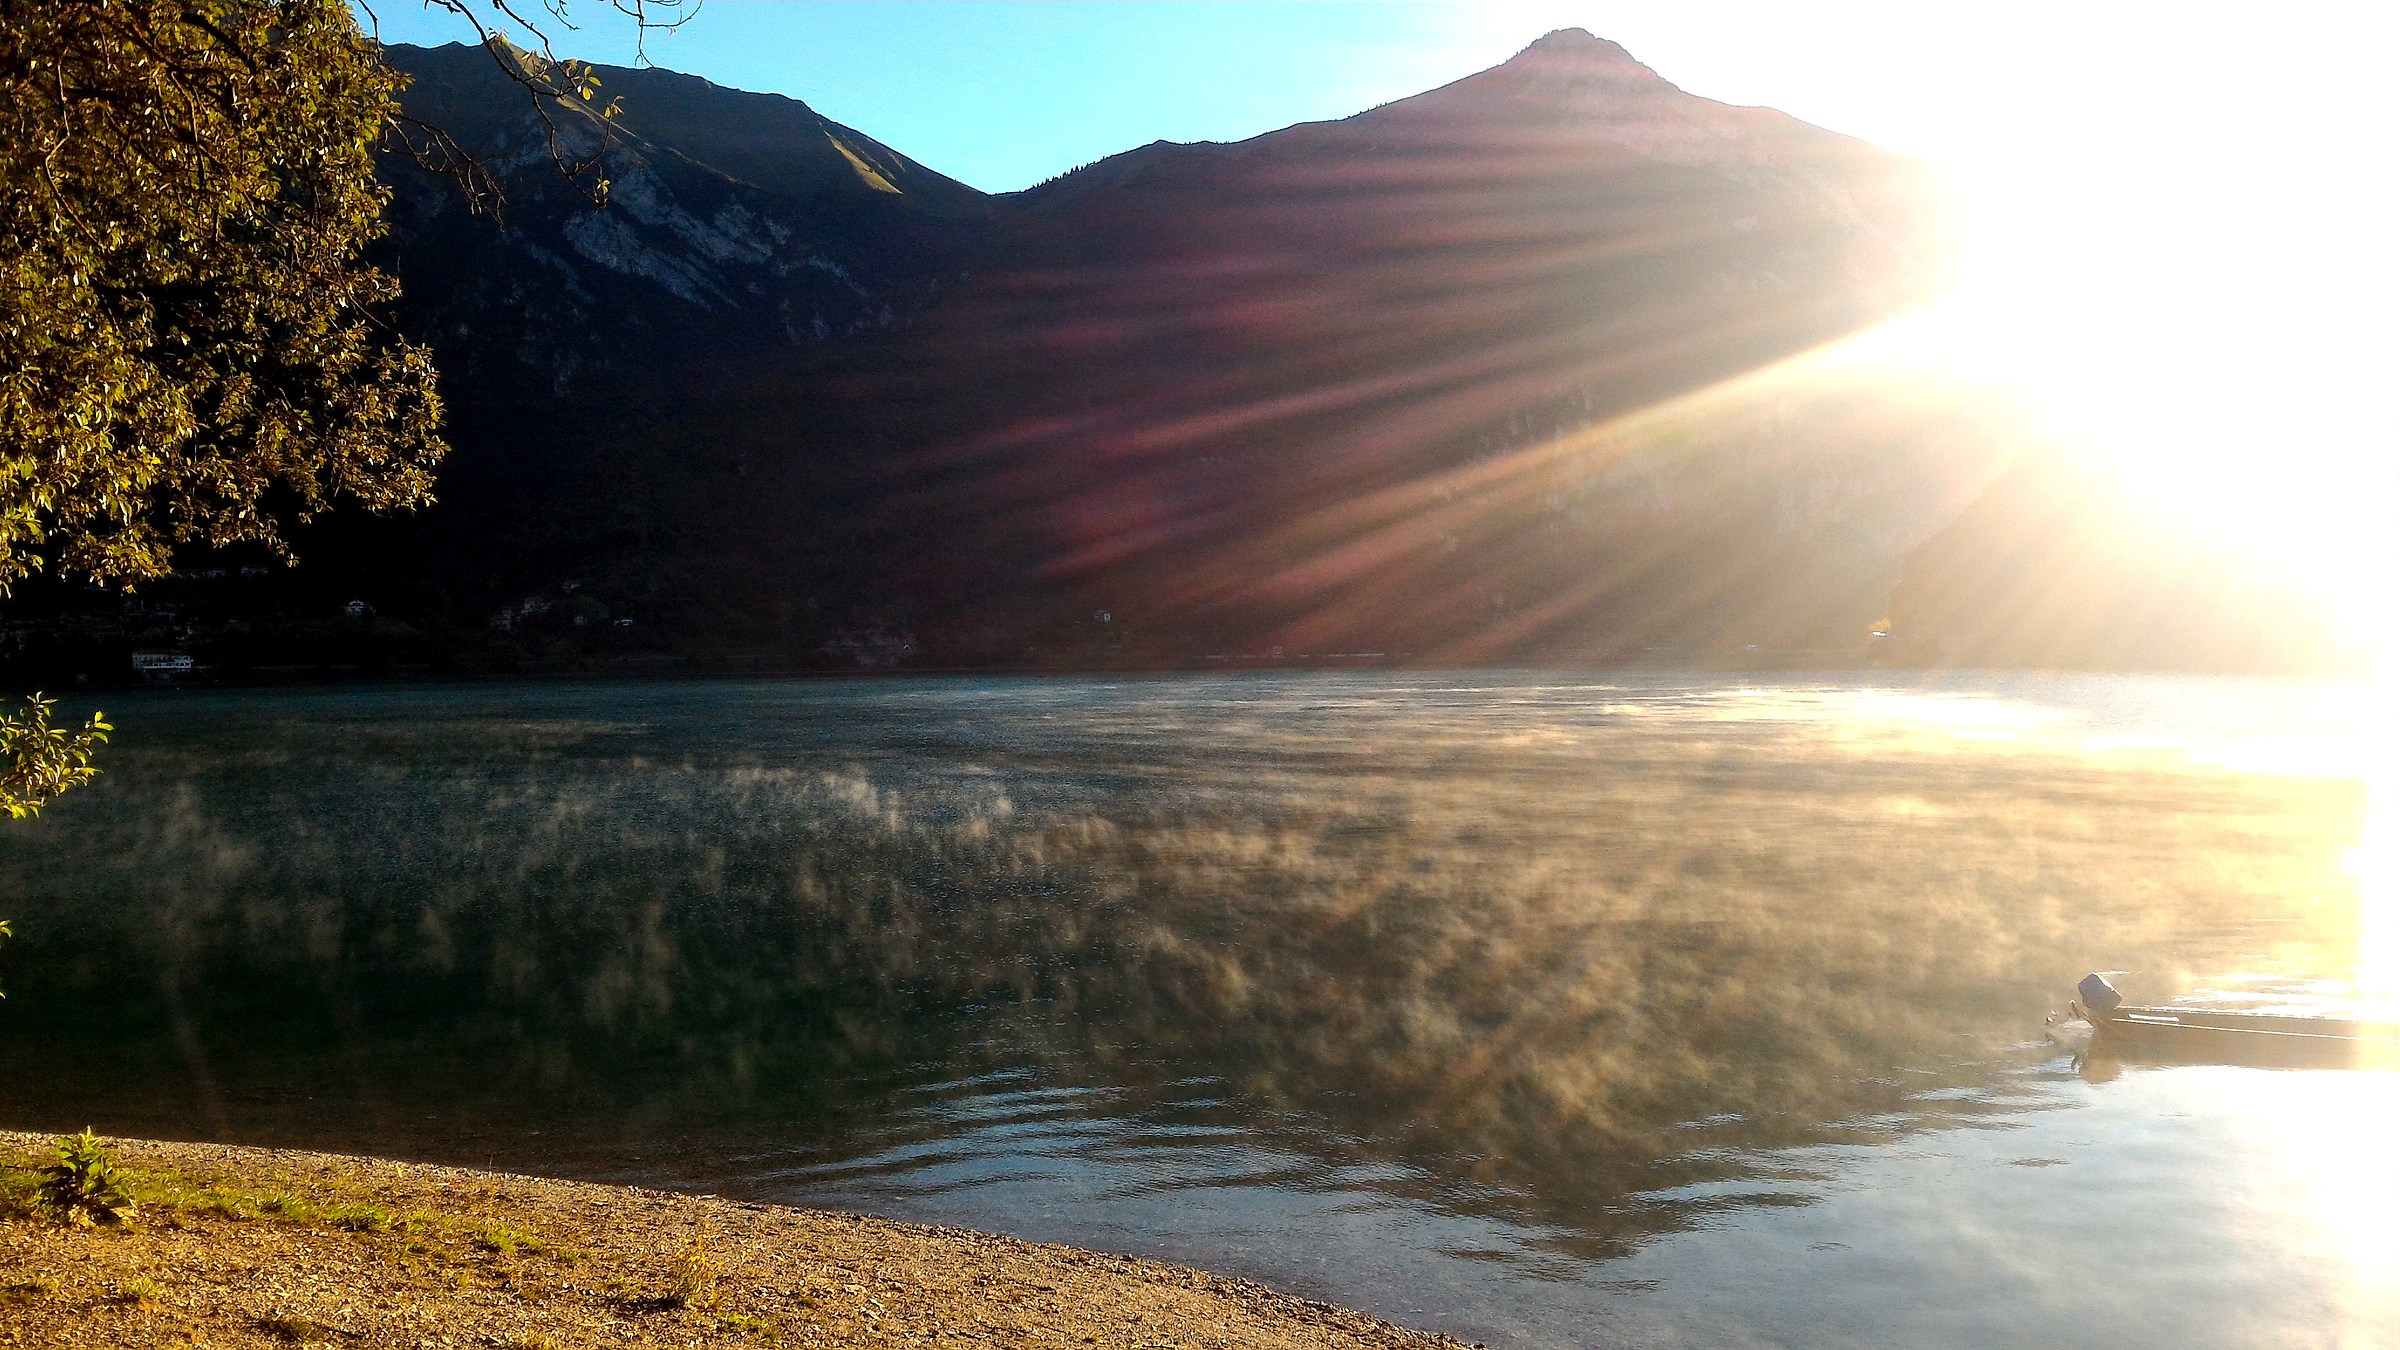 Lake Ledro...